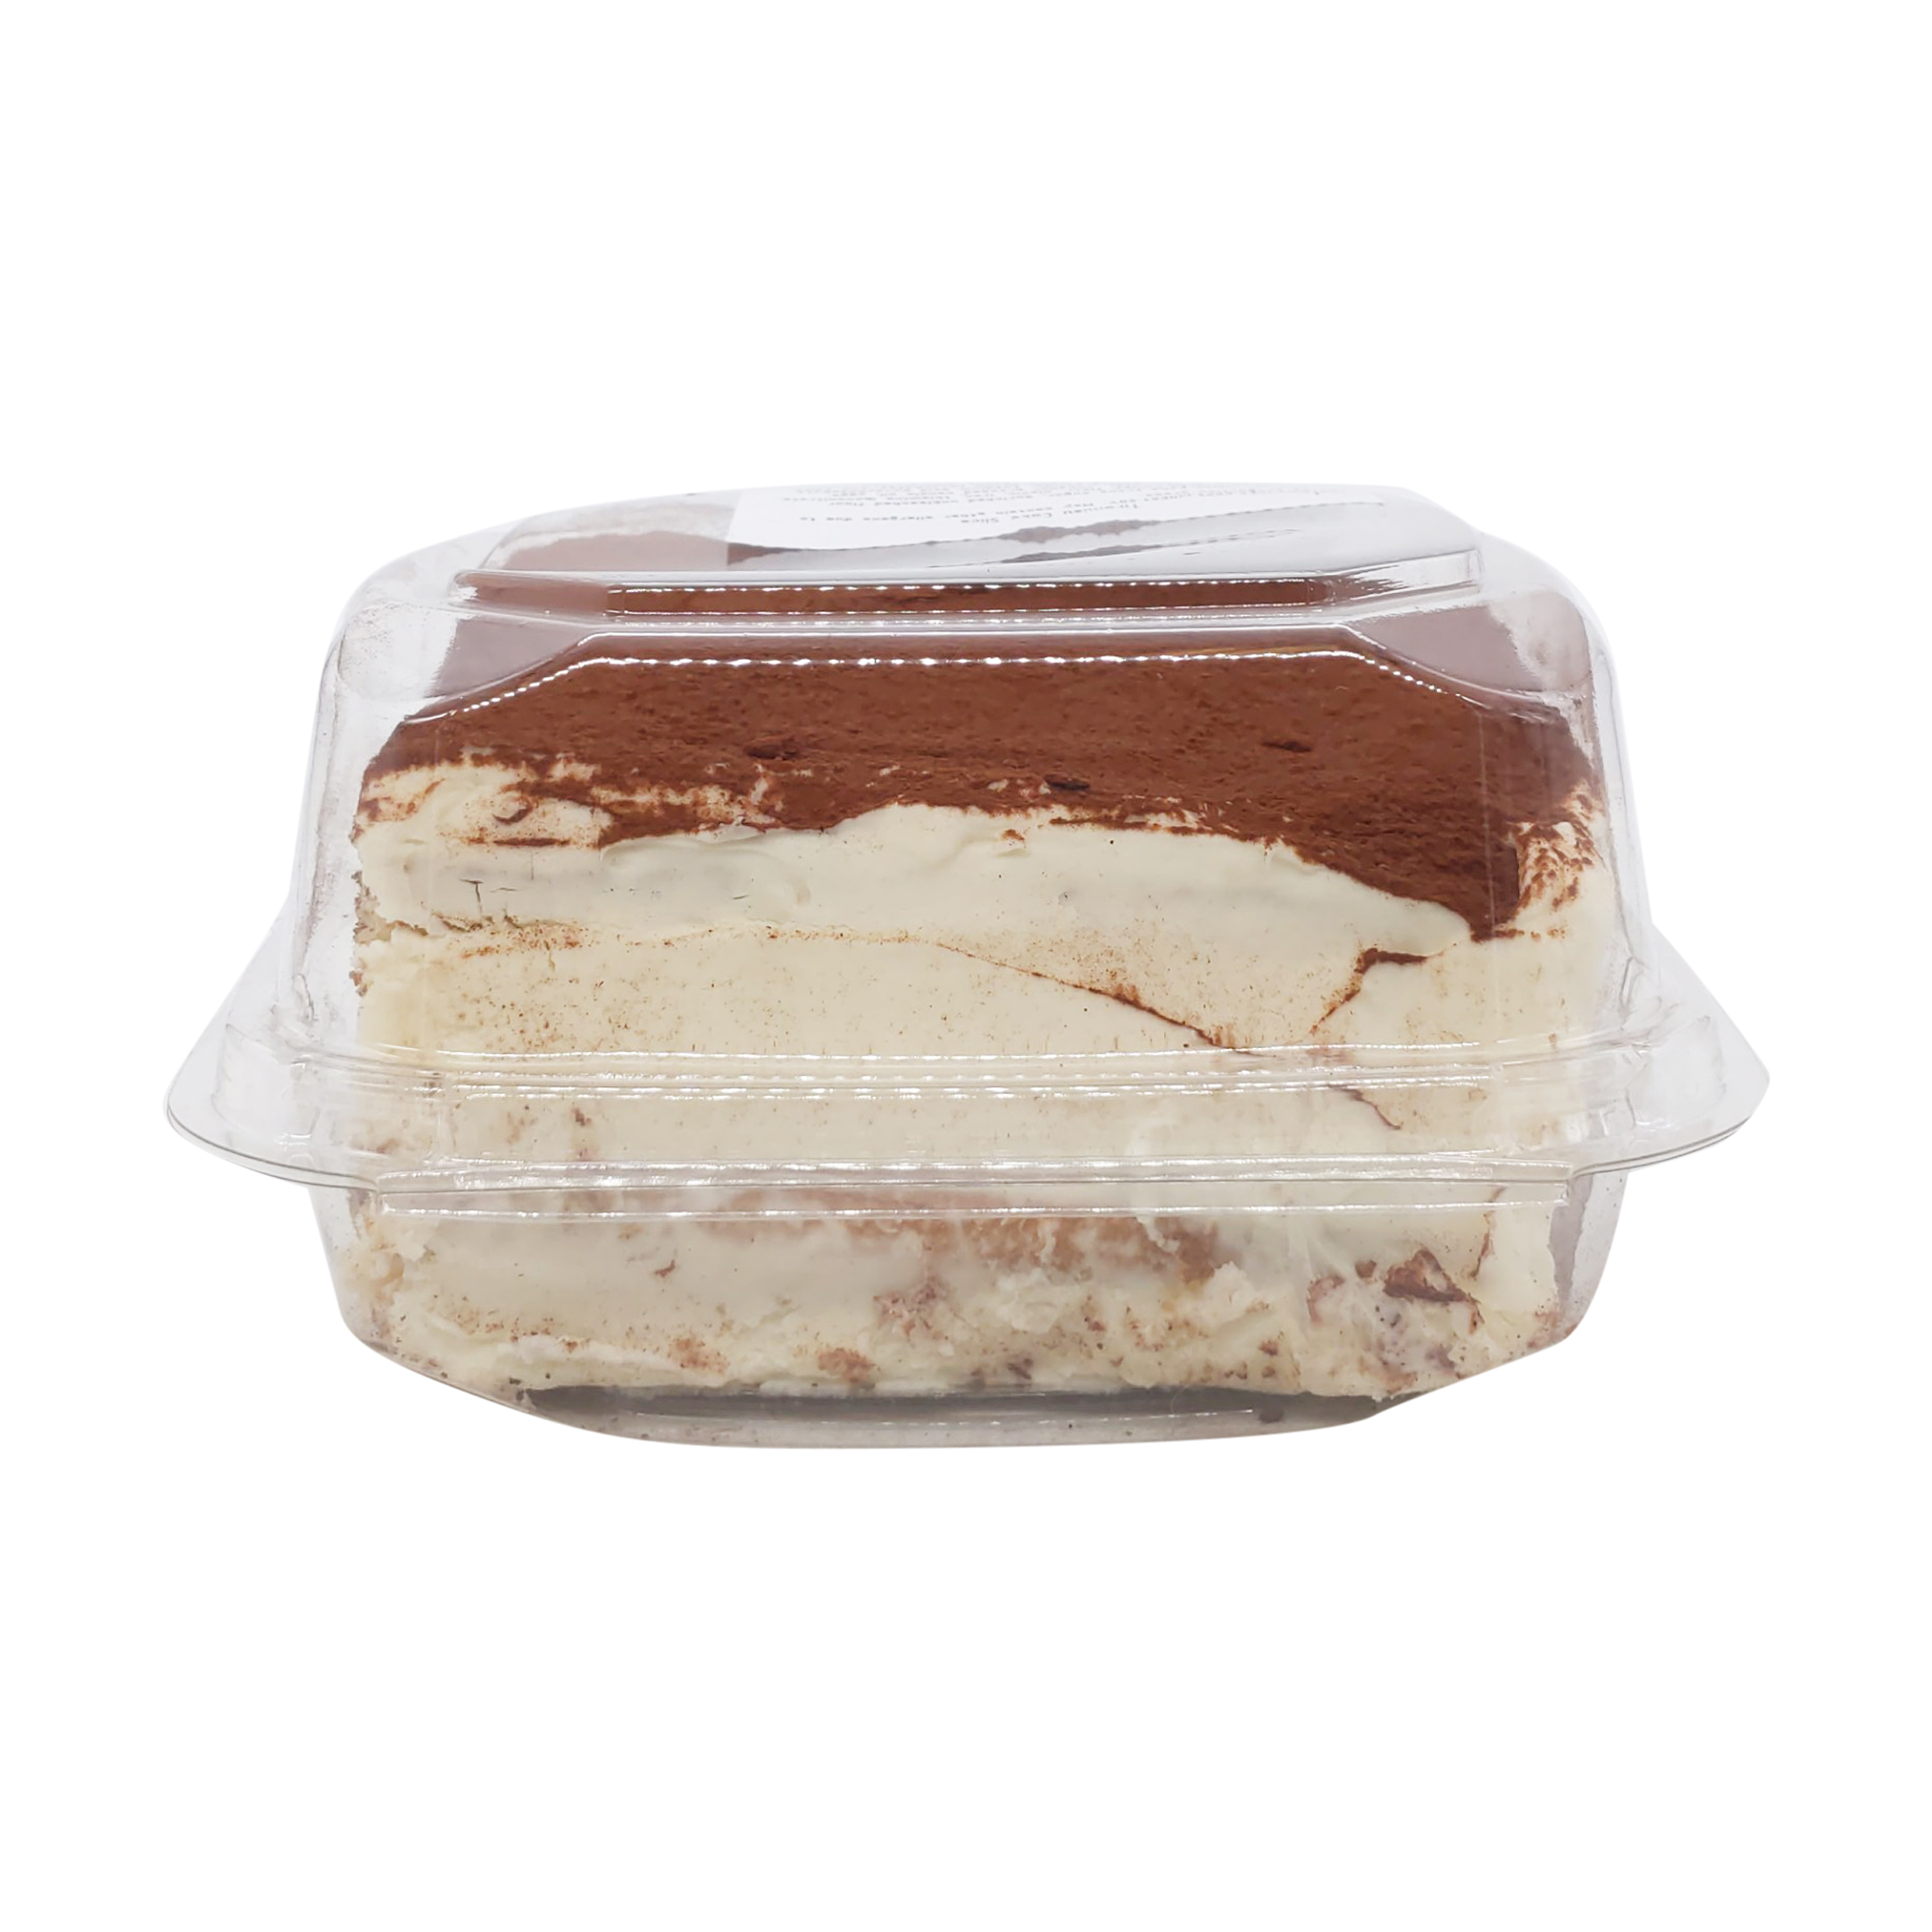 Tiramisu Cake Slice 12 Oz Whole Foods Market Whole Foods Market